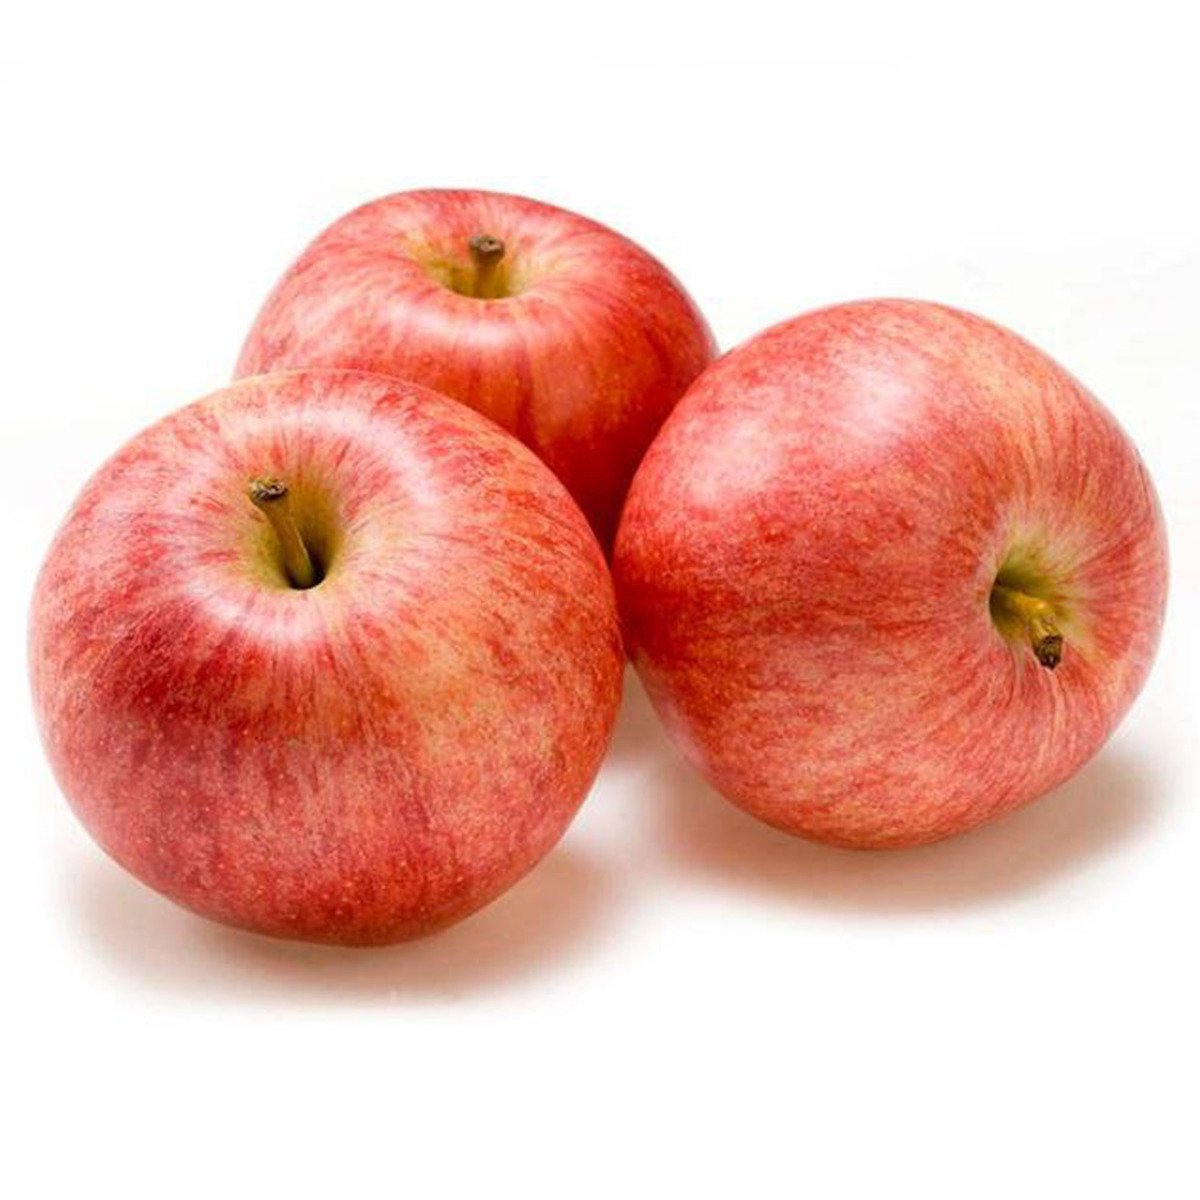 تفاح رويال جالا اسباني ١ كجم تقريبا